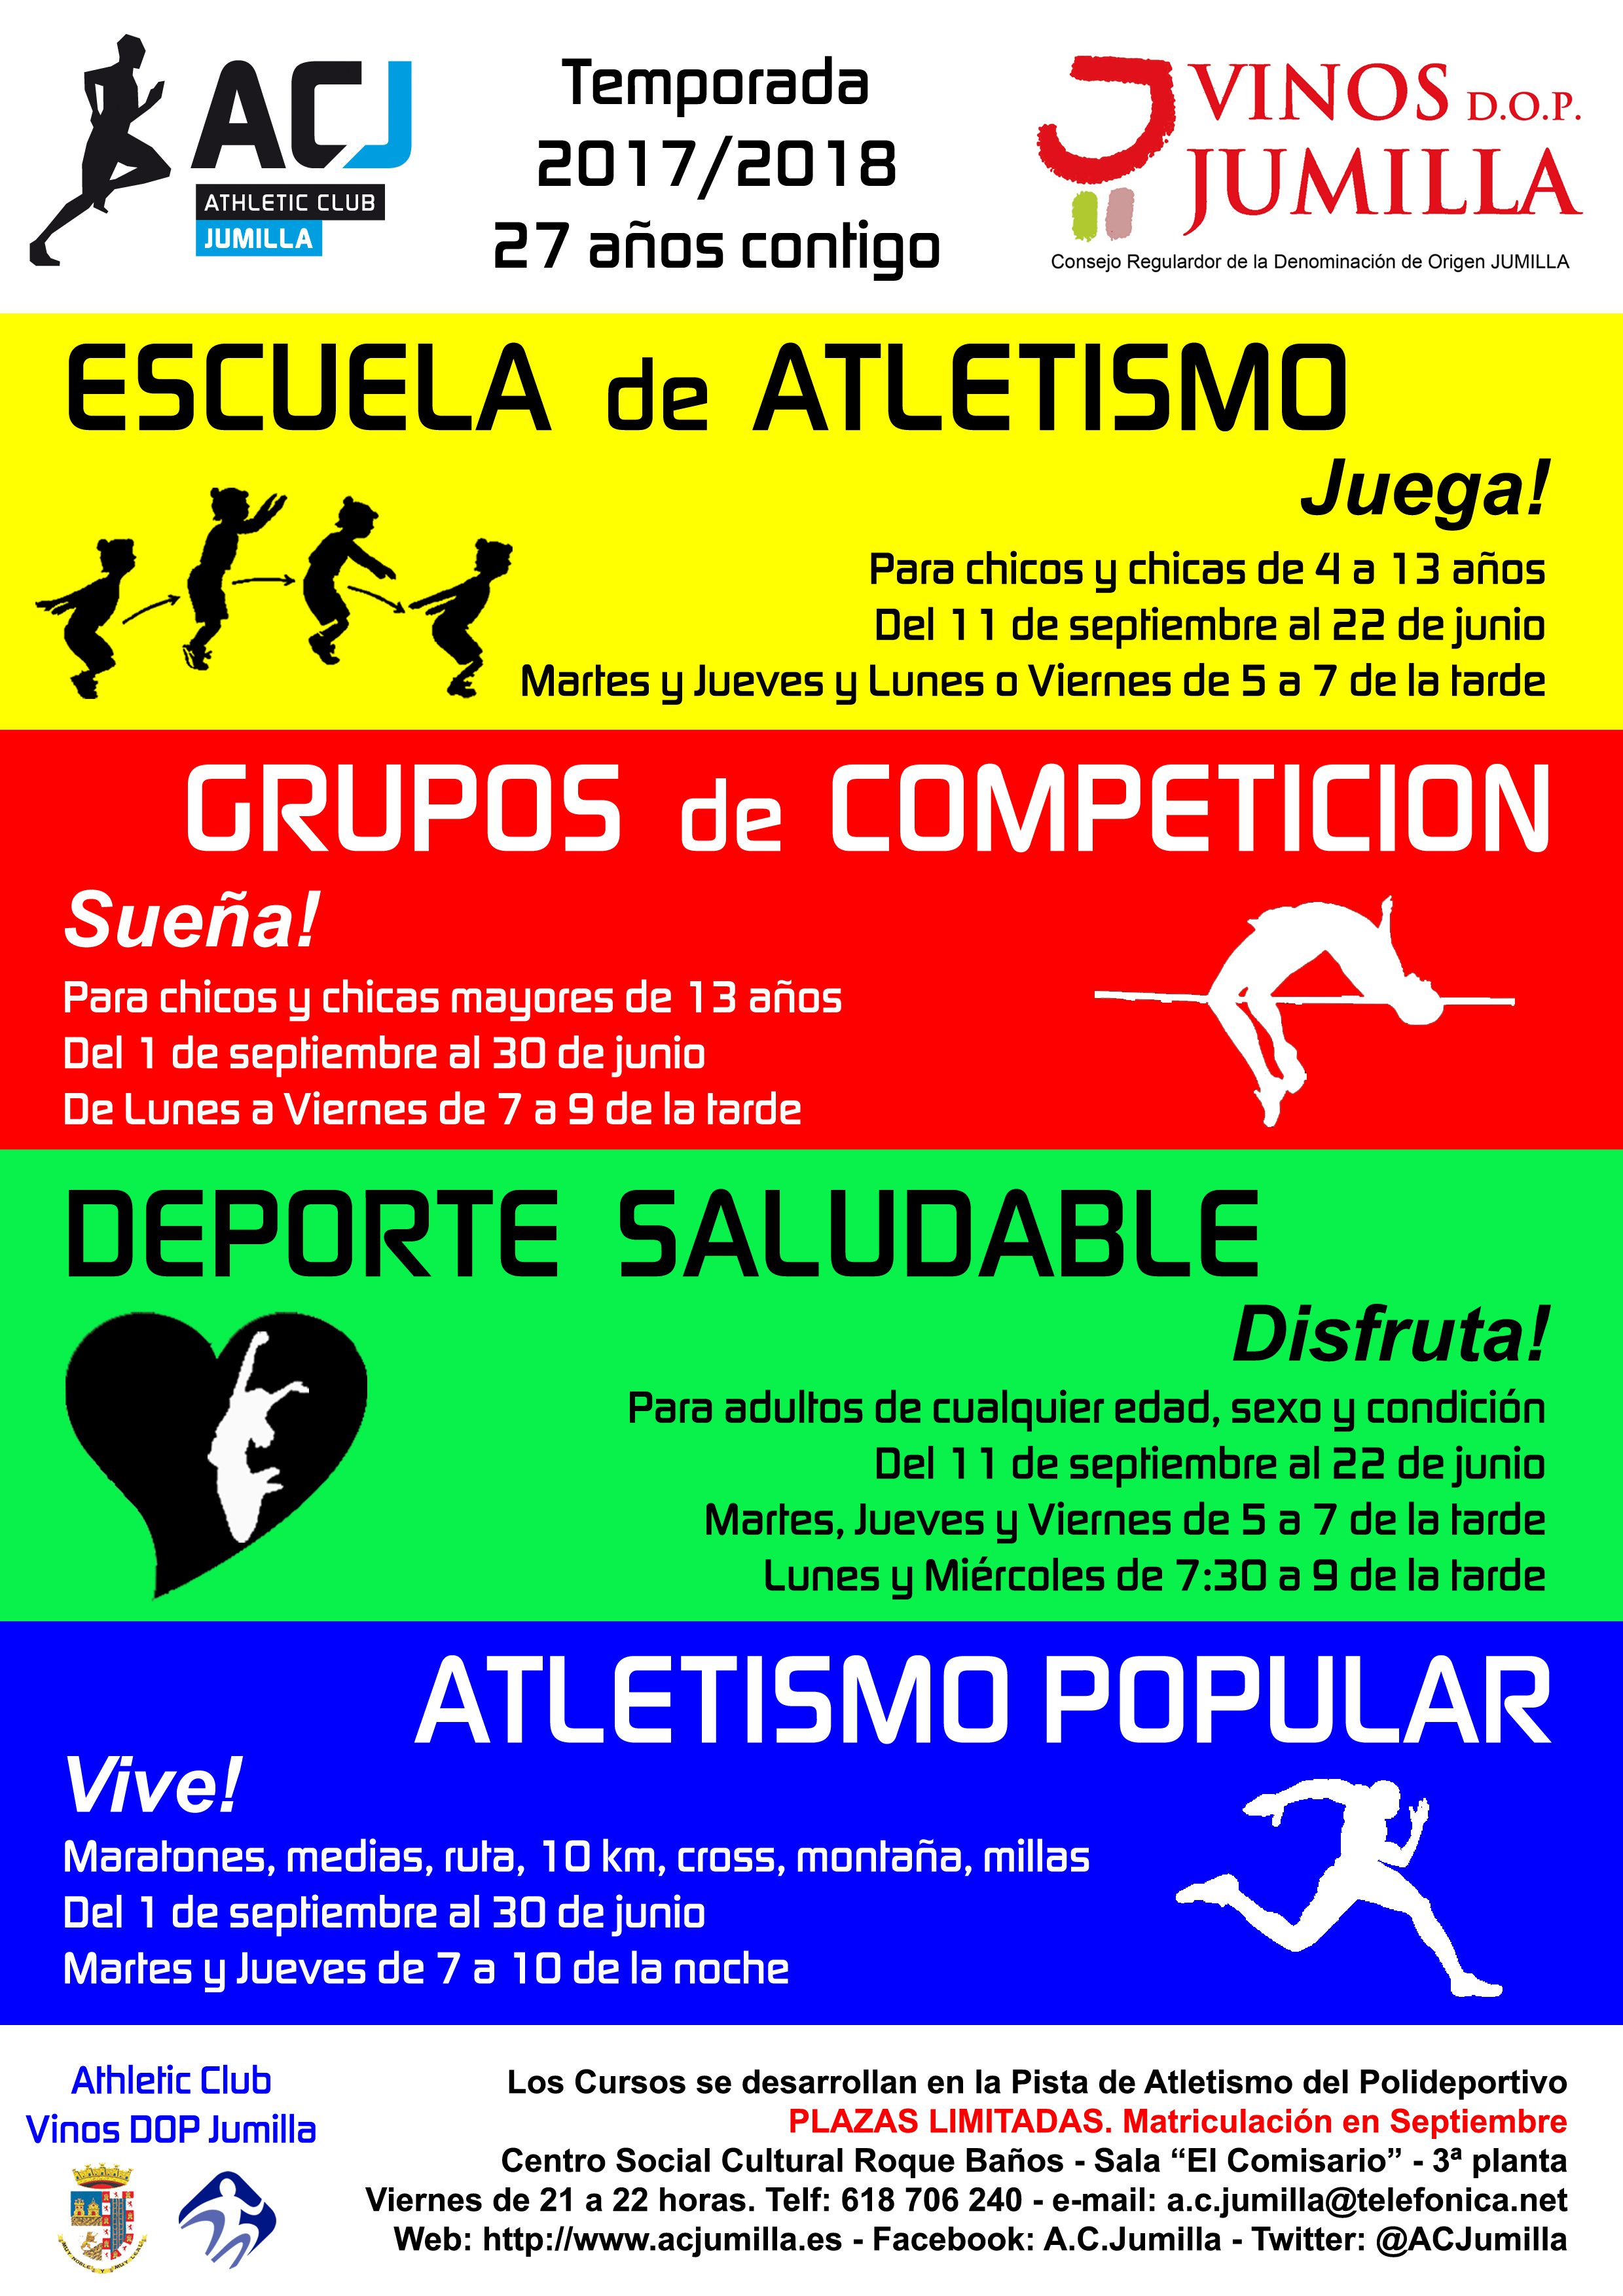 Cuatro formas distintas de disfrutar del atletismo con el Athletic Club